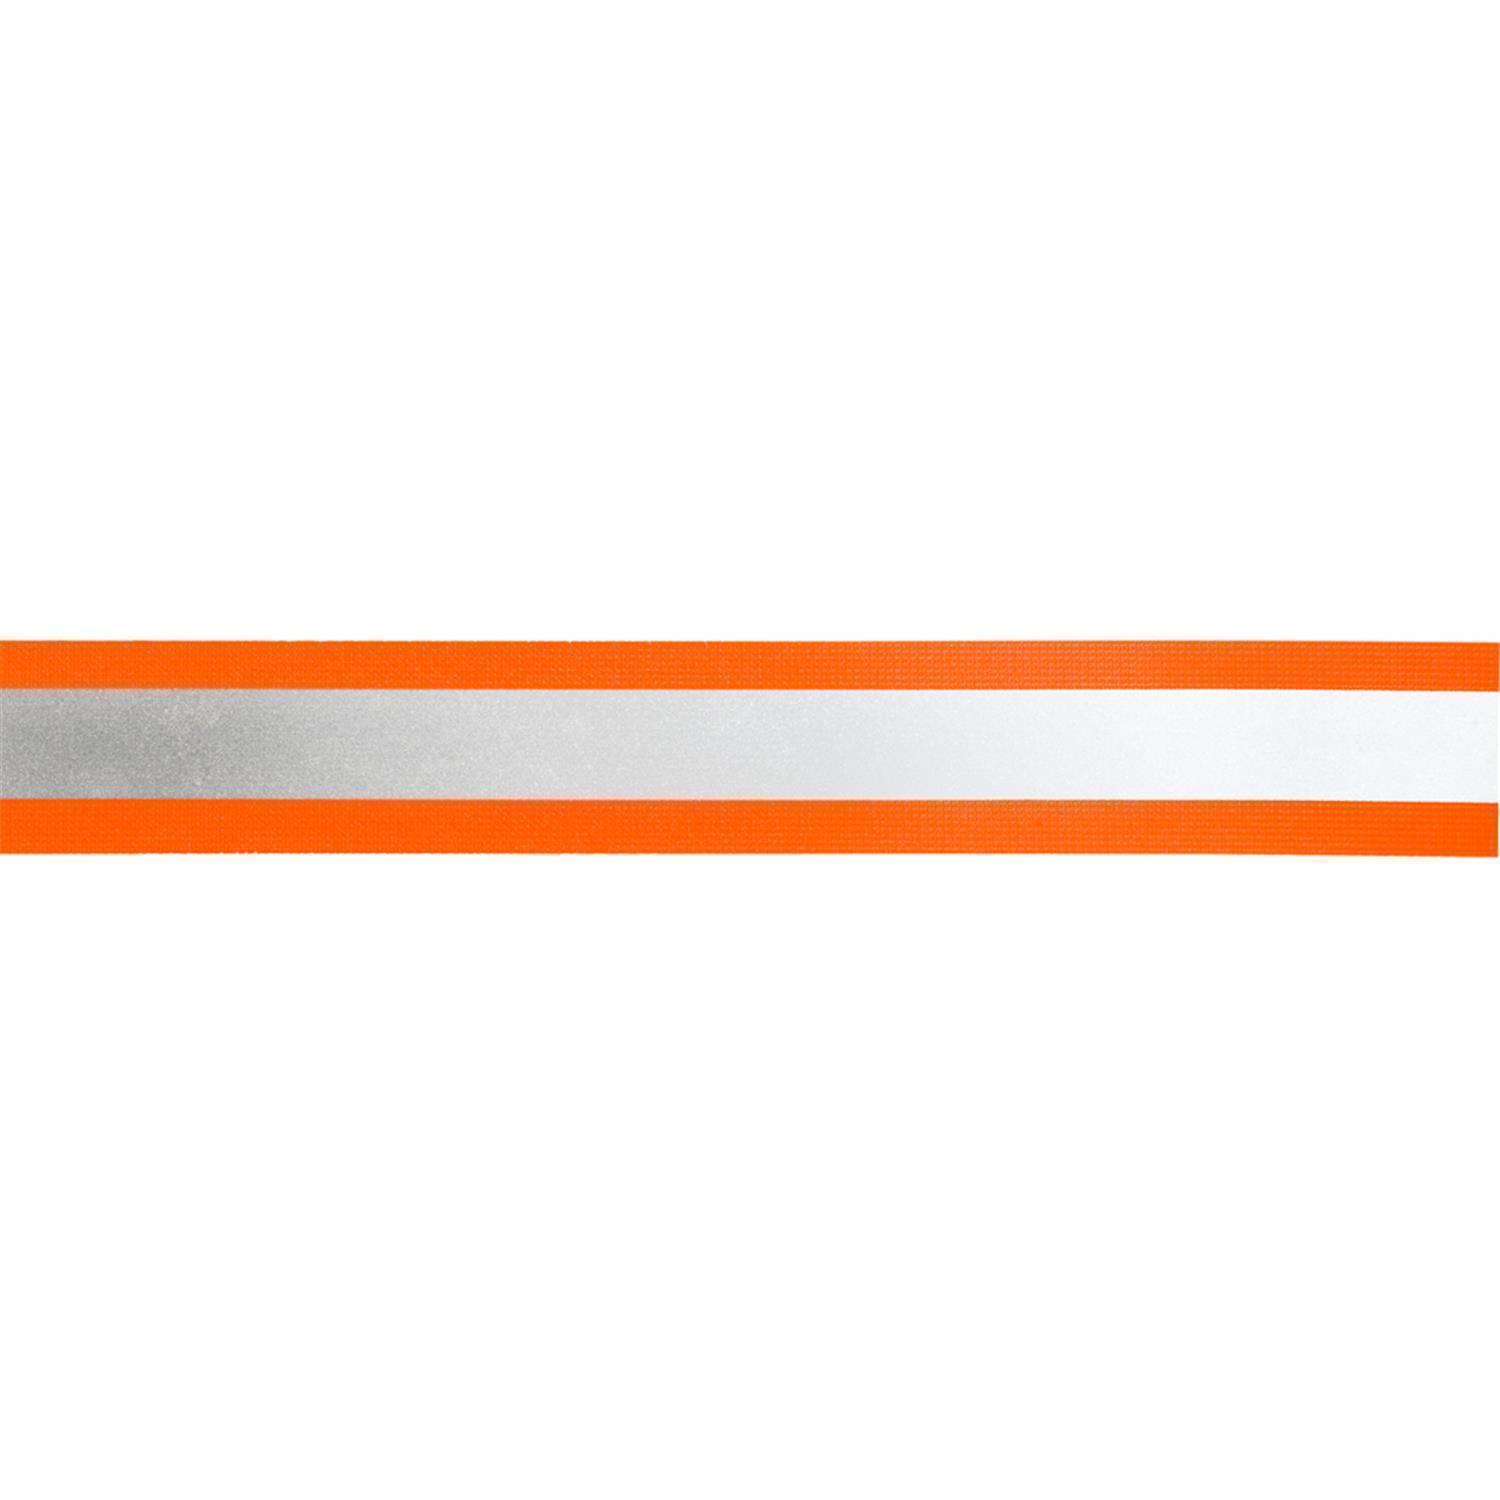 Reflektorband 25mm breit in 3 Farben orange-silber 05 Meter